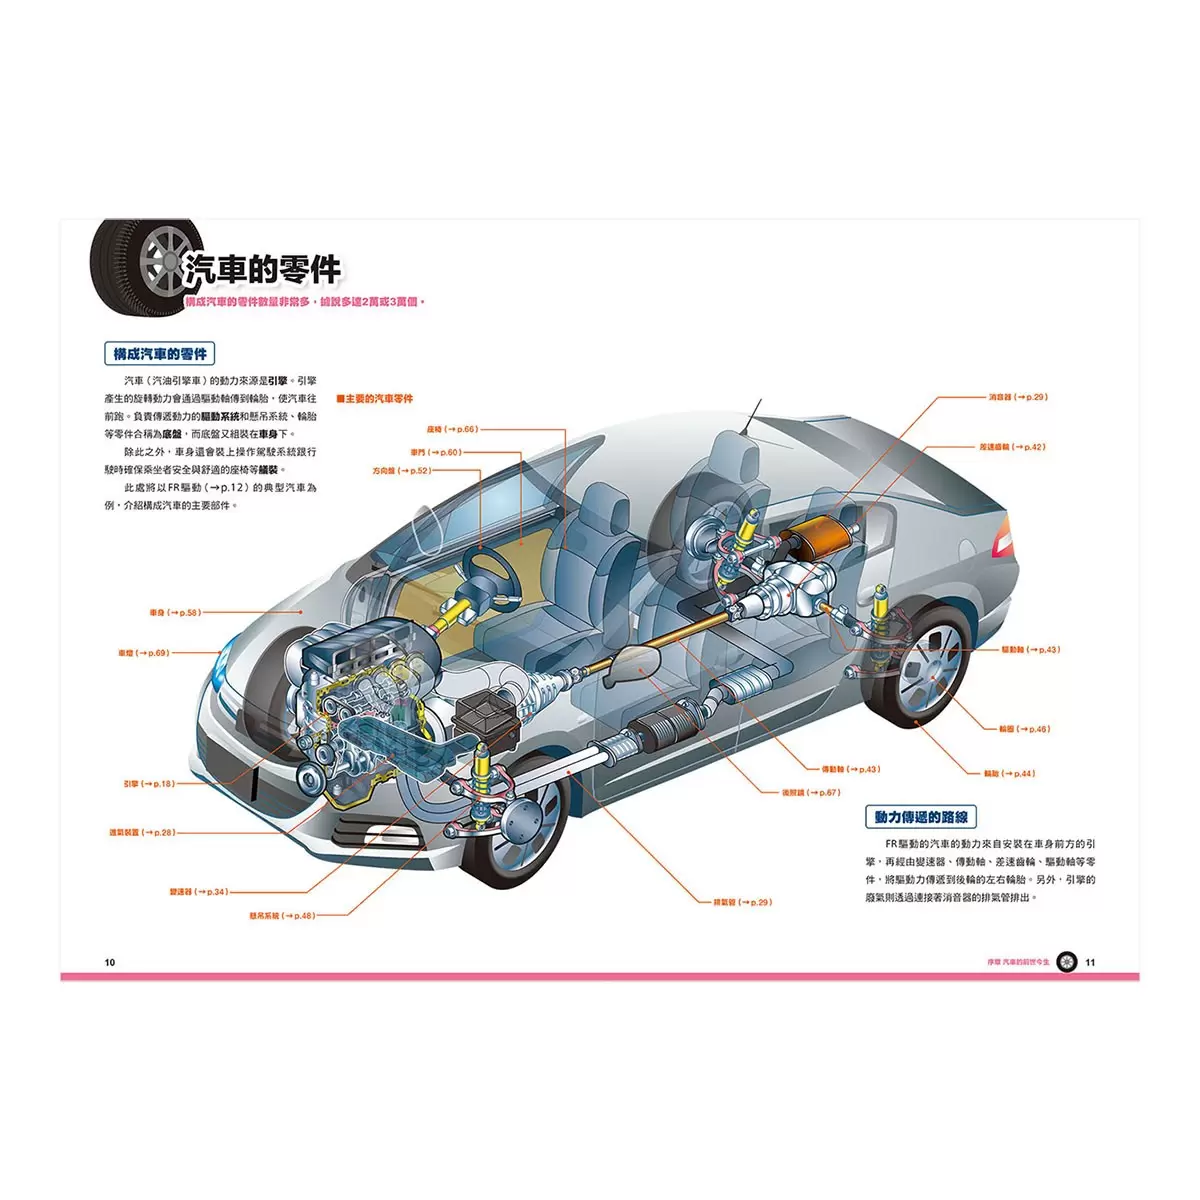 汽車構造&知識全圖解：從引擎、車體到驅動系統全方位解析